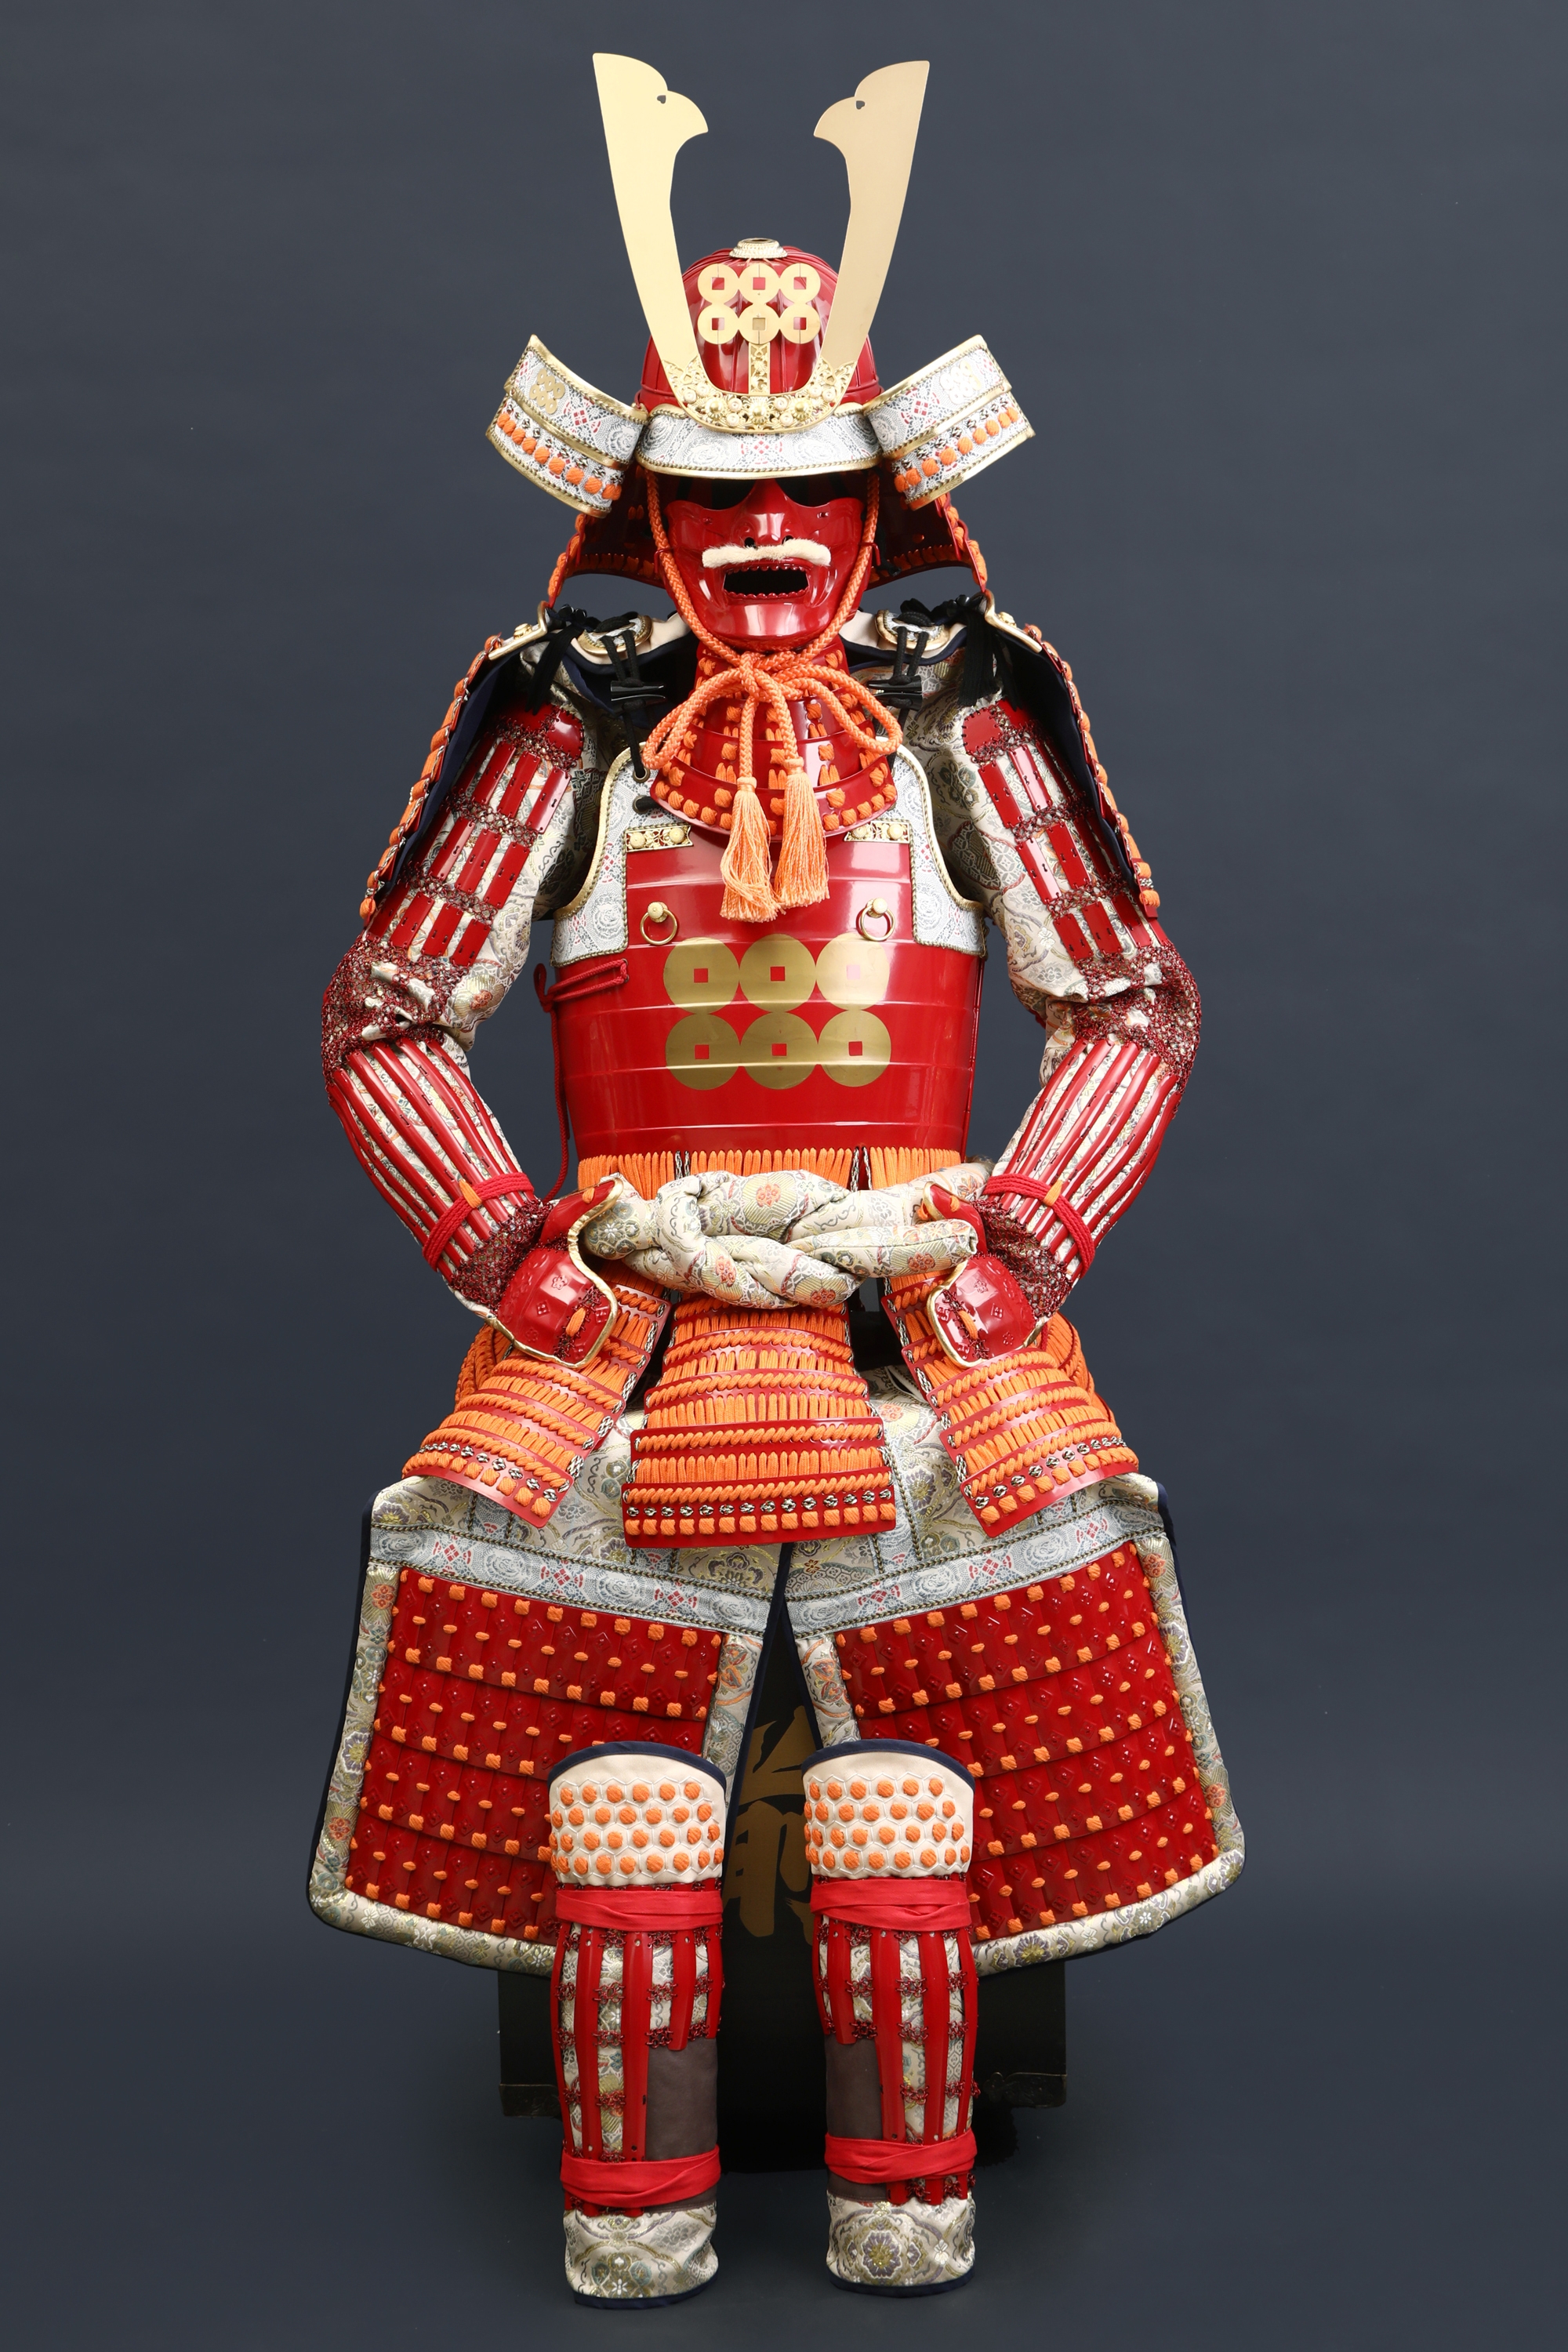 Handmade Red Japanese Samurai Armor For Yukimura Sanada With Kuro Kuwagata Helmet, Life Size Yoroi